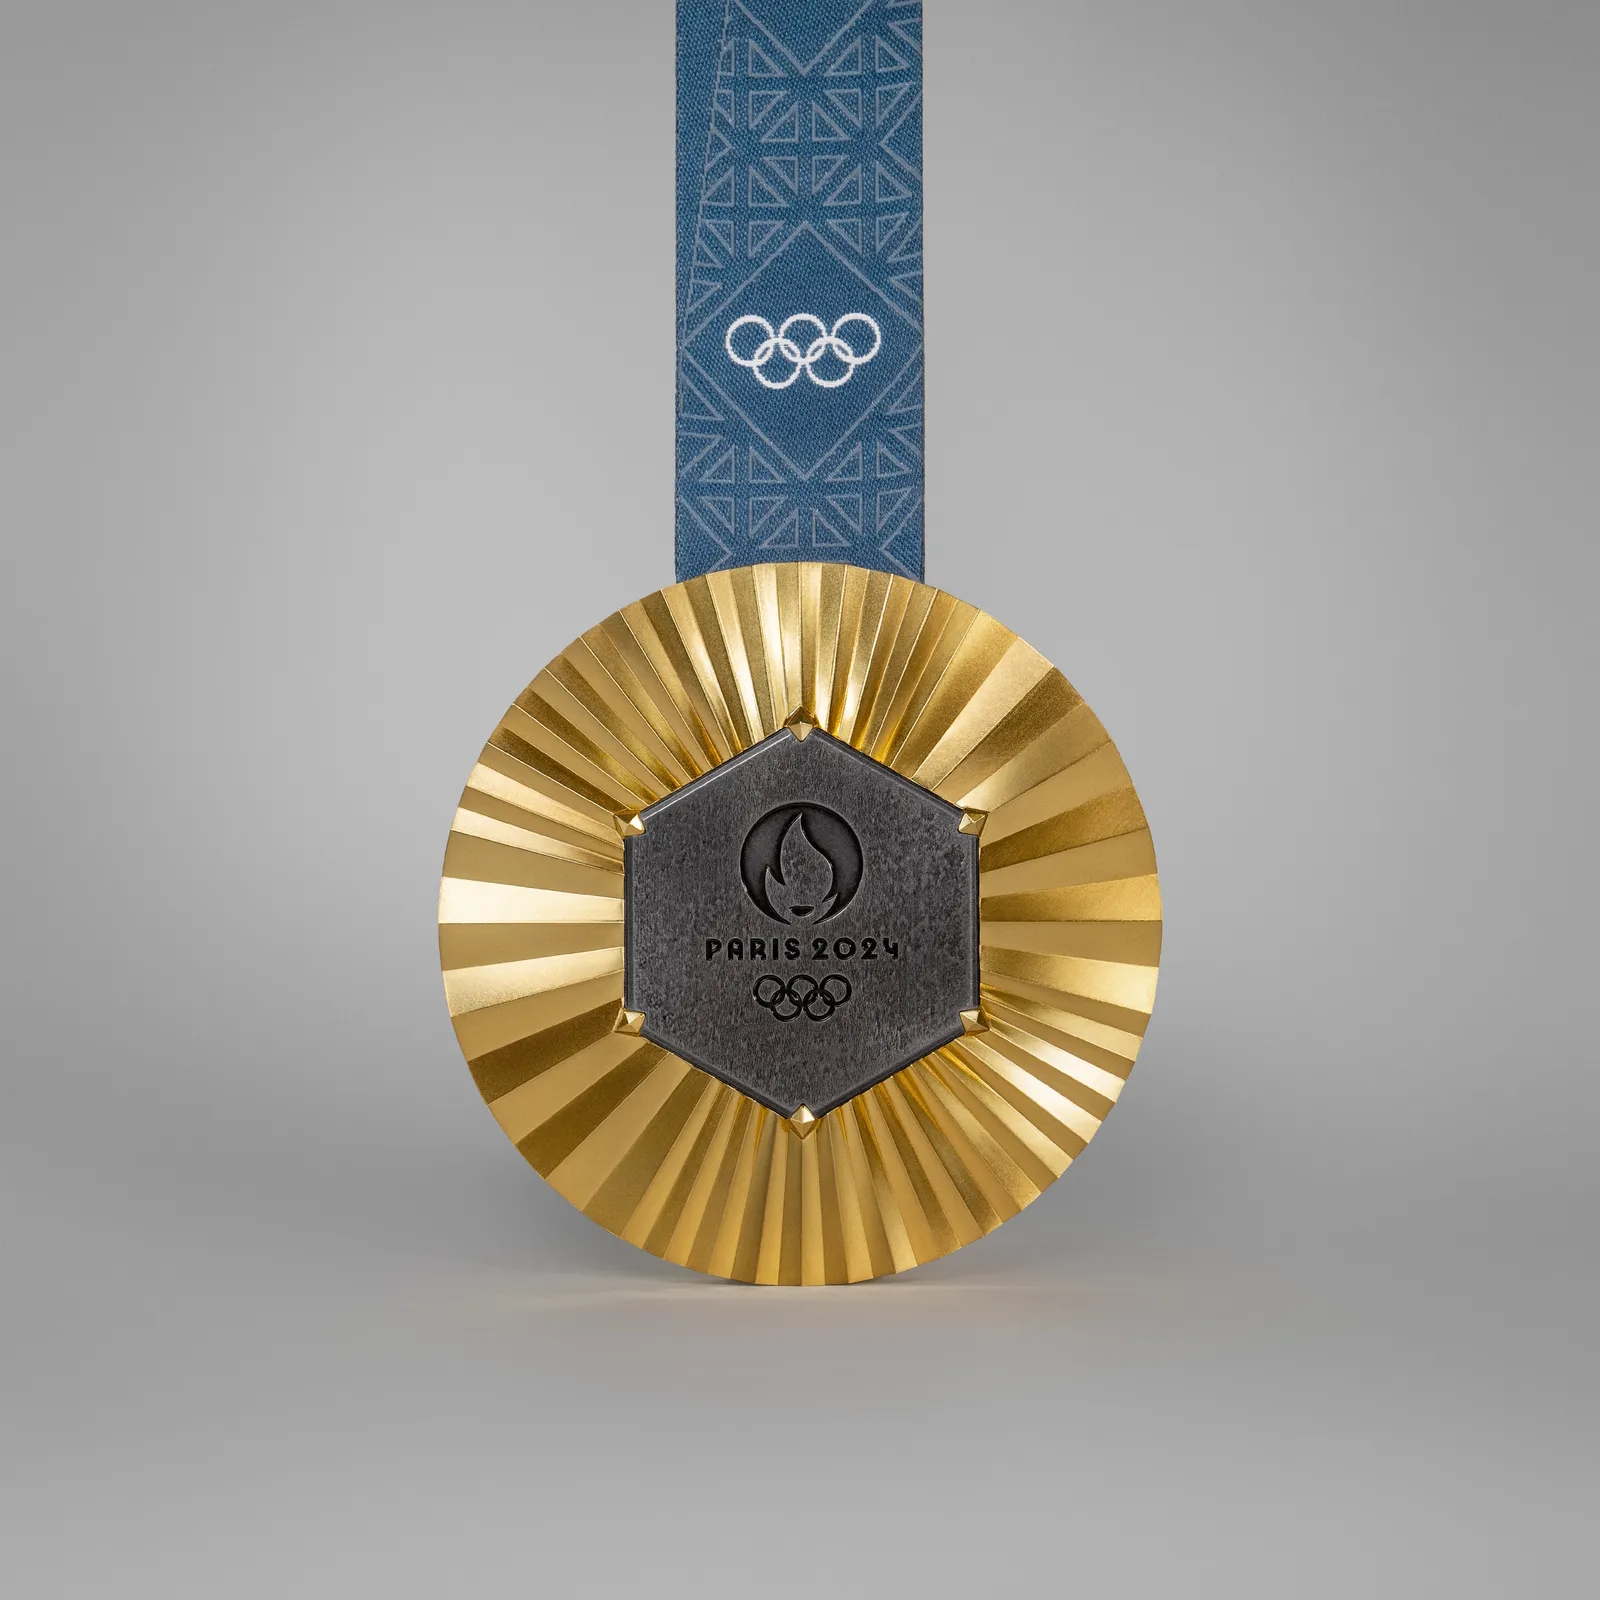 Lifestyle/Paris 2024: Que tesouro está escondido na medalha dos Jogos Olímpicos de Paris 2024?